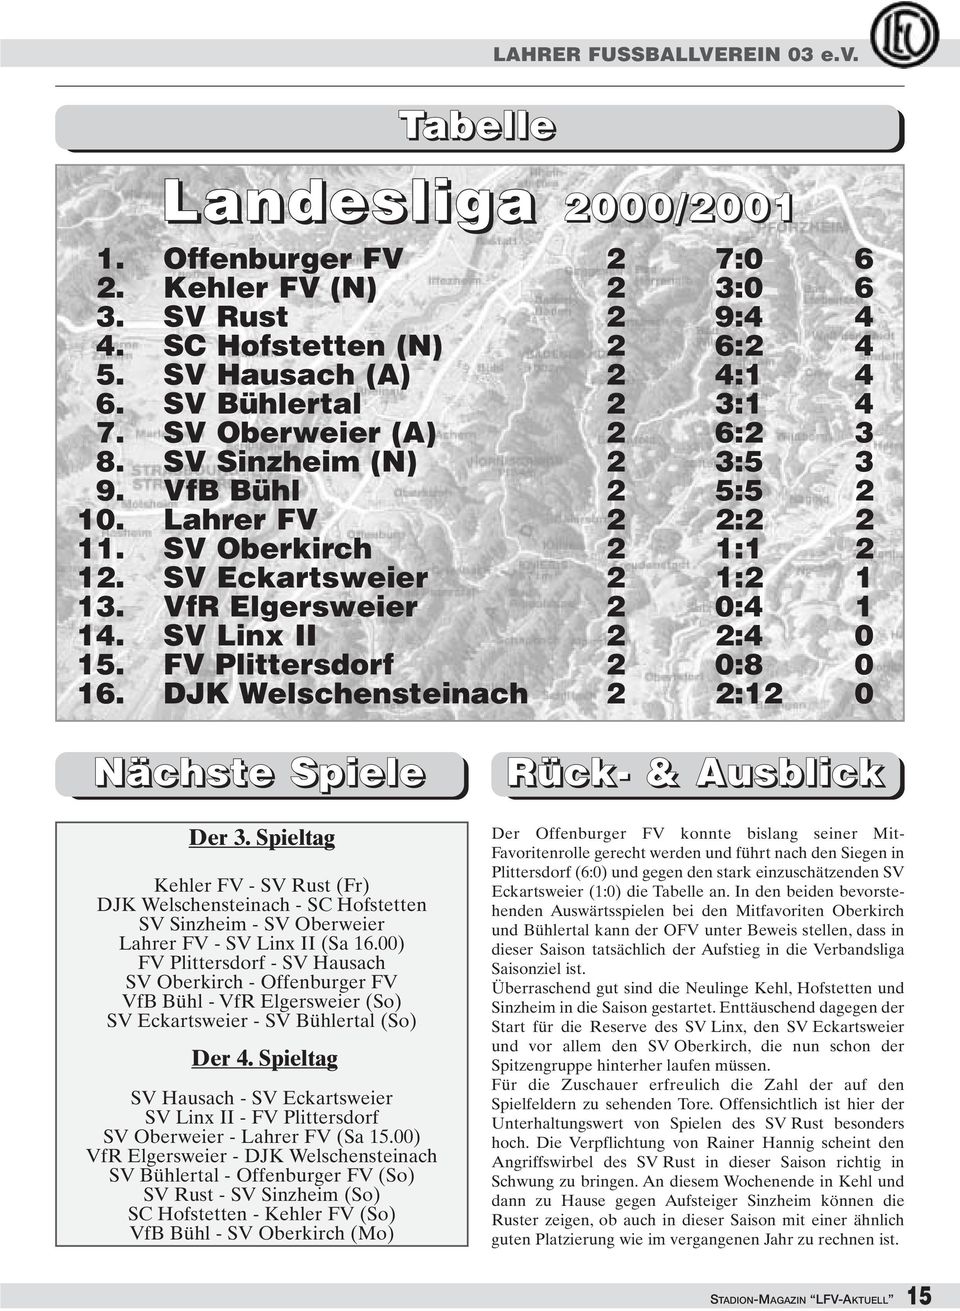 VfR Elgersweier 2 0:4 1 14. SV Linx II 2 2:4 0 15. FV Plittersdorf 2 0:8 0 16. DJK Welschensteinach 2 2:12 0 Nächste Spiele Der 3.